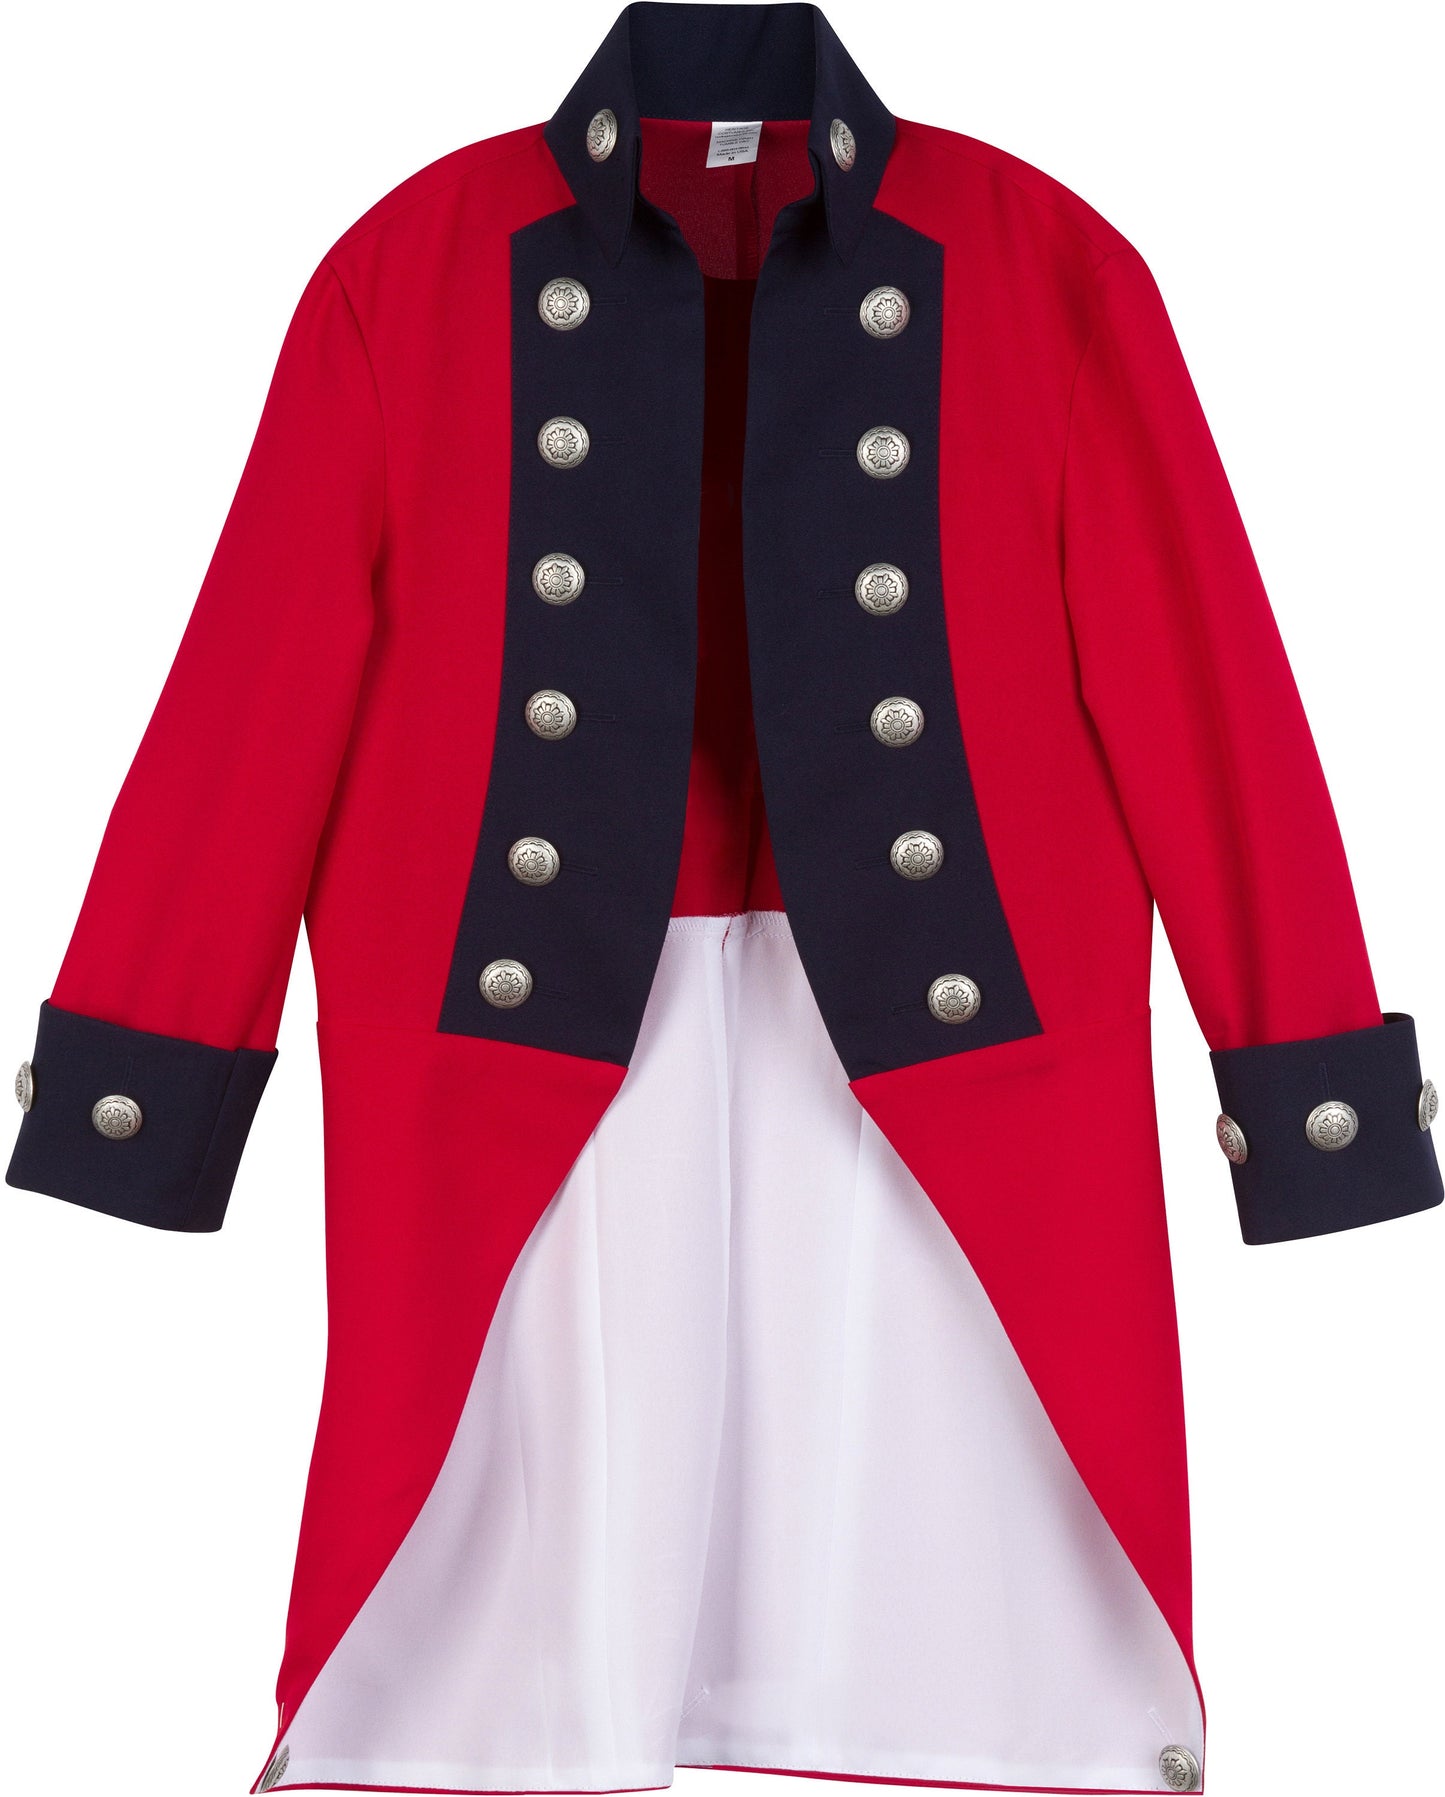 Deluxe Children's British Red Coat Revolutionary War Uniform